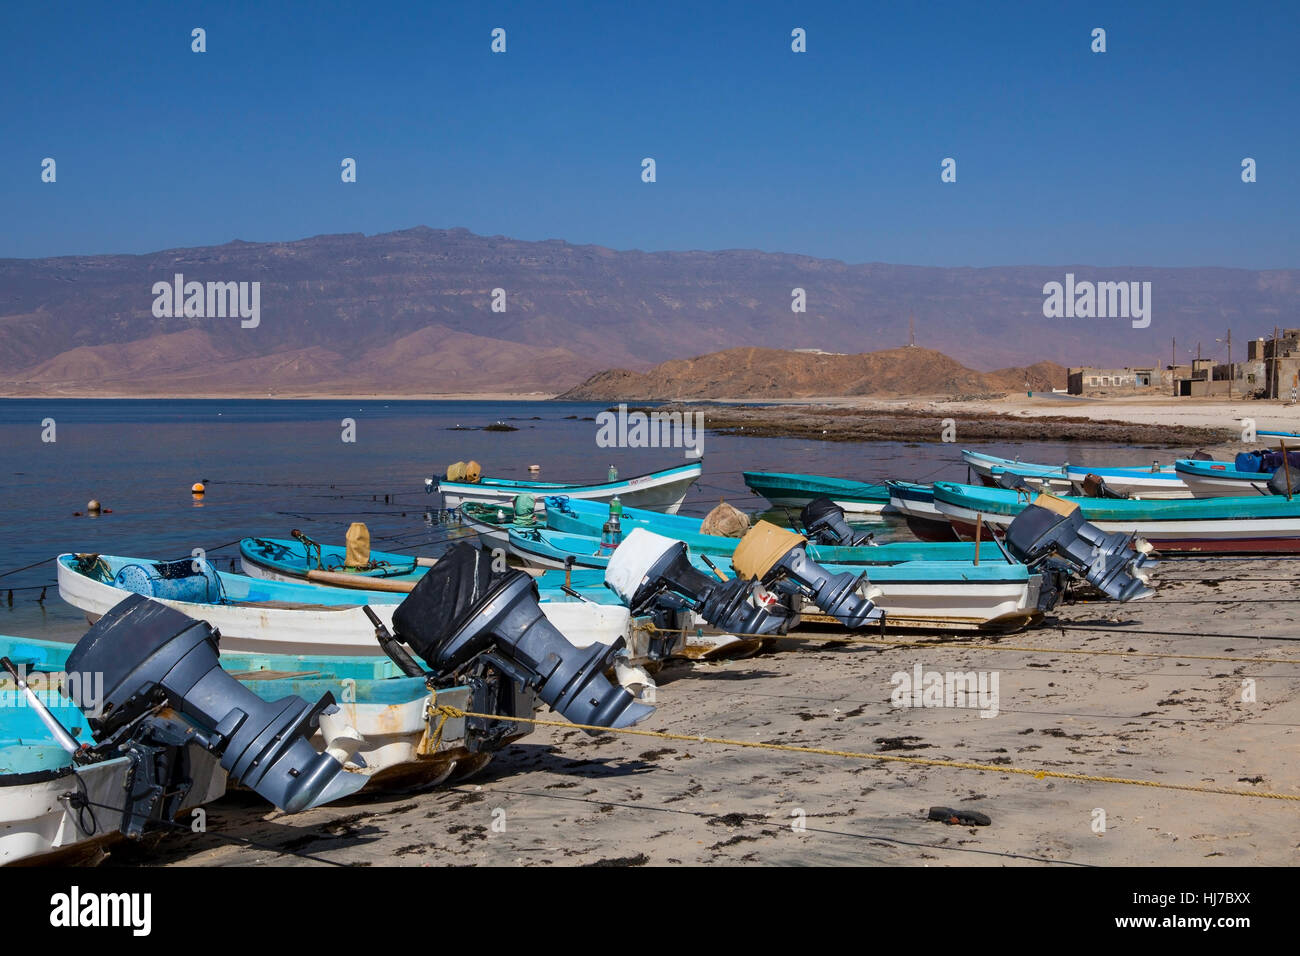 Small fishing boats in Mirbat, Dhofar, Oman Stock Photo